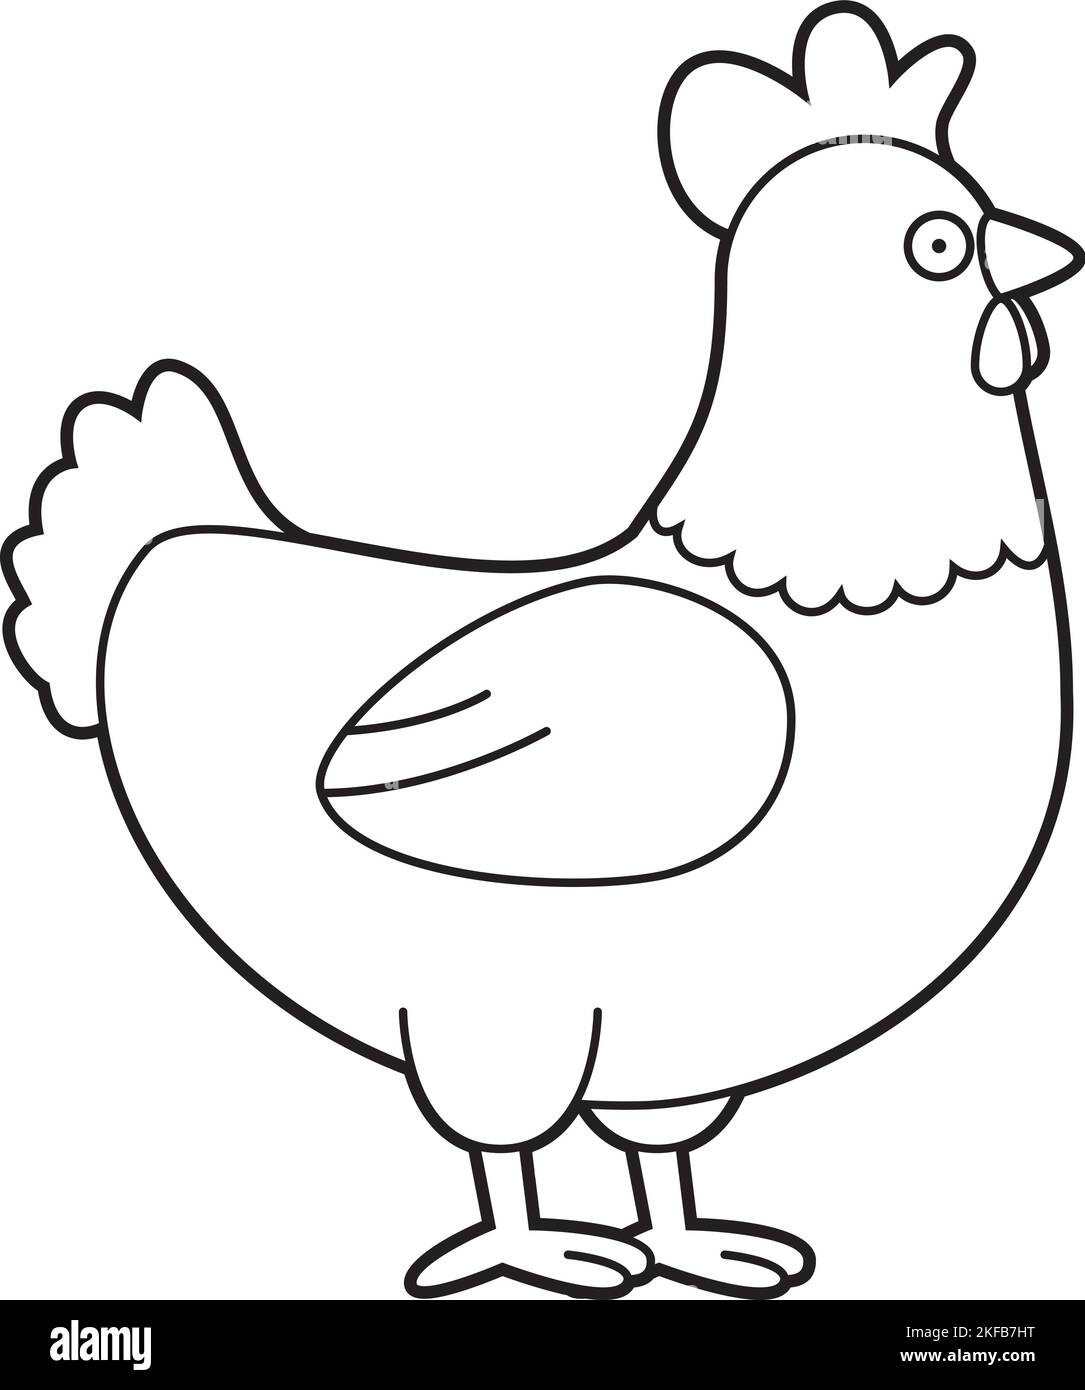 Disegno vettoriale di cartoni animati facile da colorare di un pollo Illustrazione Vettoriale